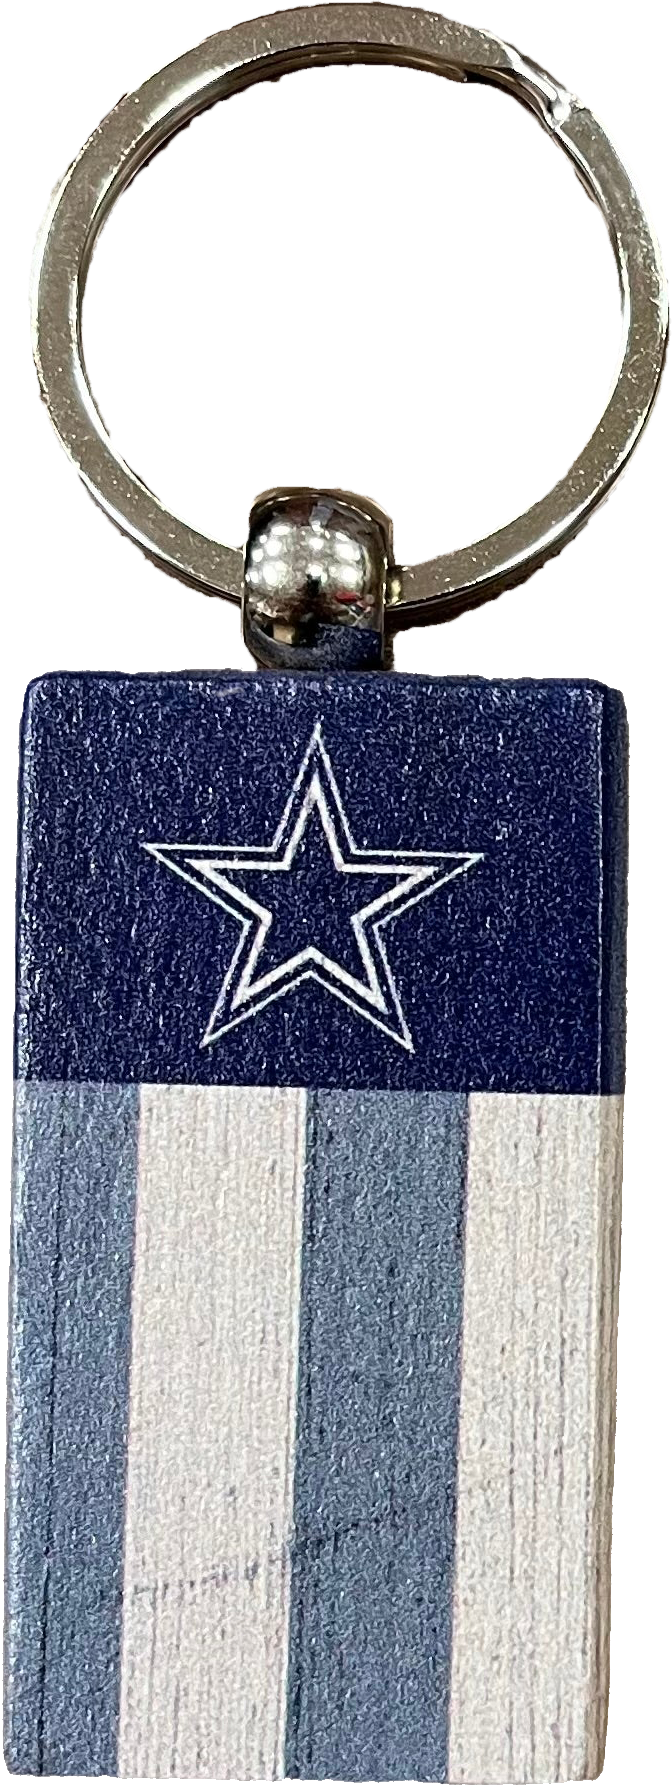 Dallas Cowboys Rectangle Flag Keychain - Dynasty Sports & Framing 